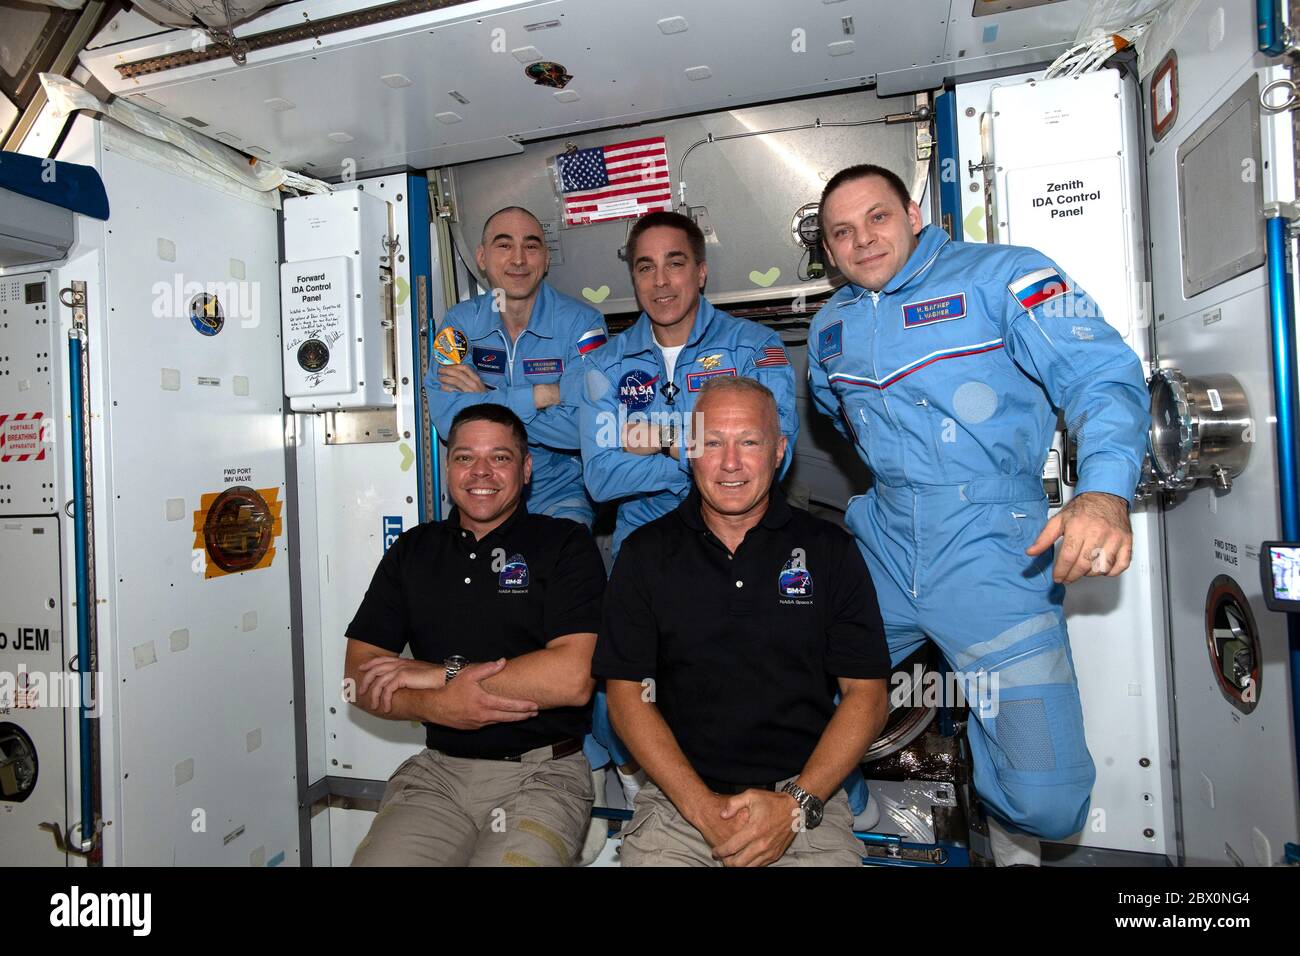 ISS - 31. Mai 2020 - die neu erweiterte Expedition 63 Crew mit NASA Astronauten (erste Reihe, von links) Bob Behnken und Doug Hurley, die gerade eingestiegen sind Stockfoto